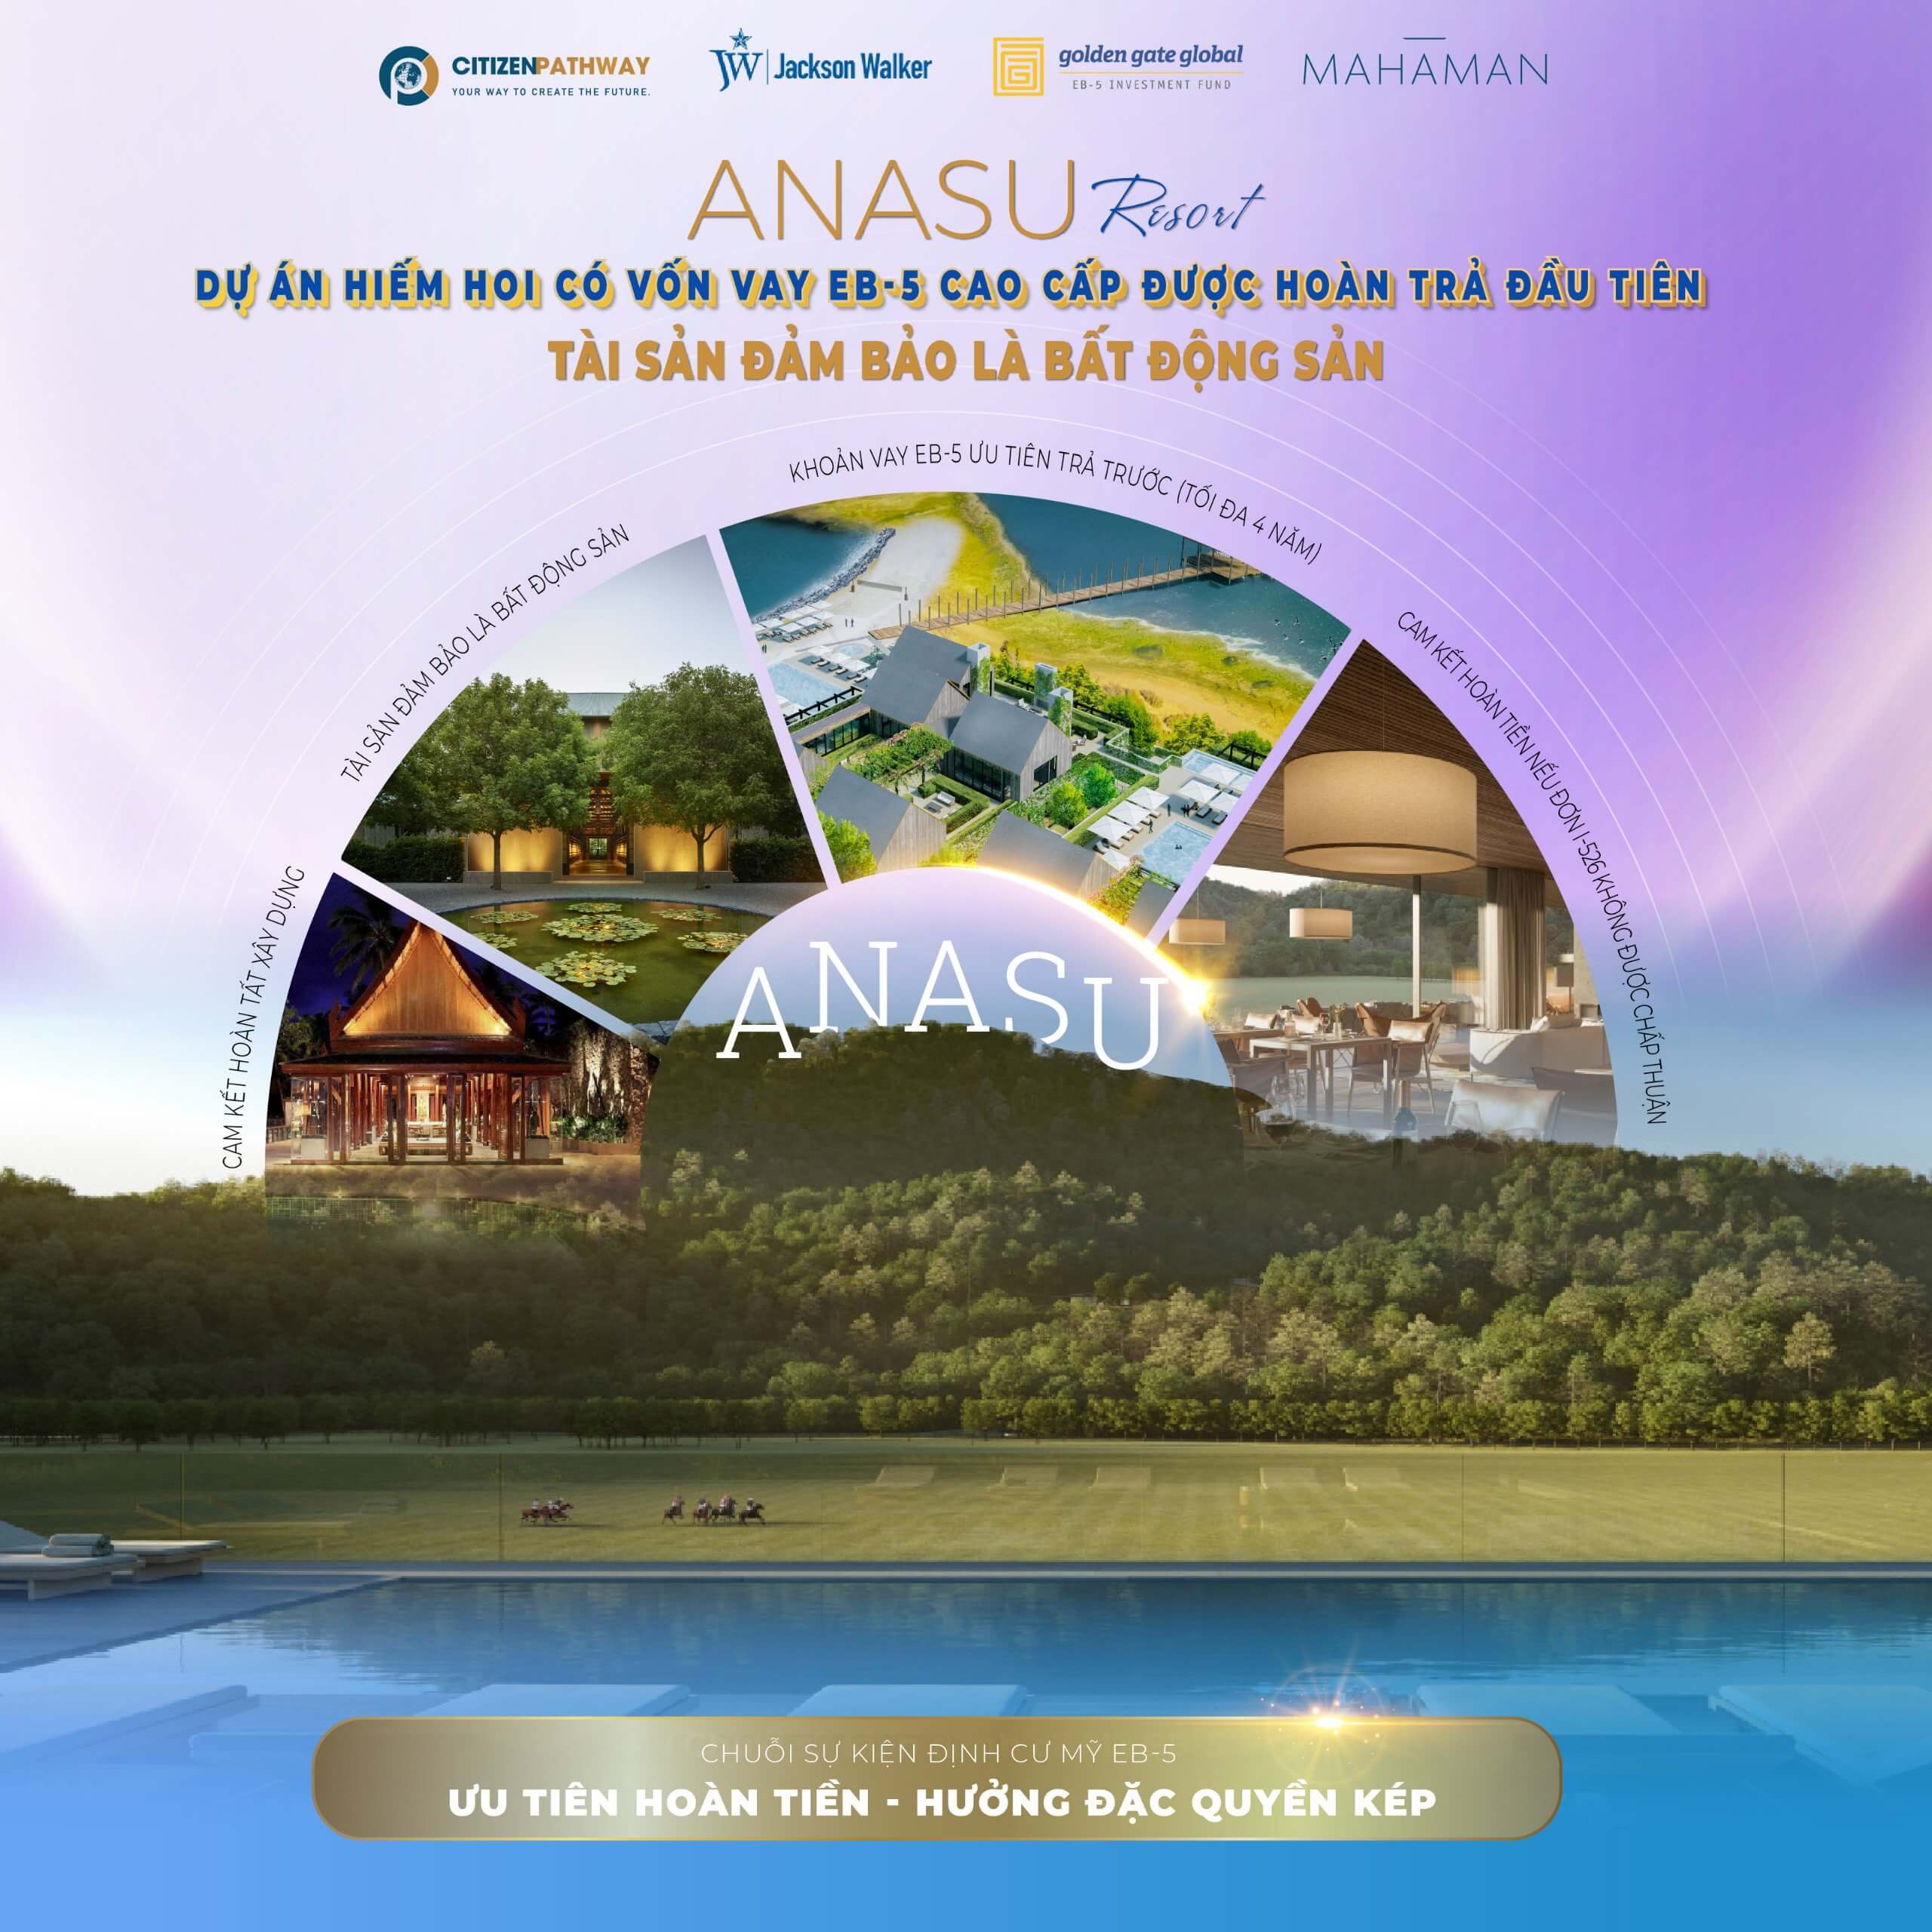 Anasu Resort: Dự án hiếm hoi có vốn vay EB-5 cao cấp